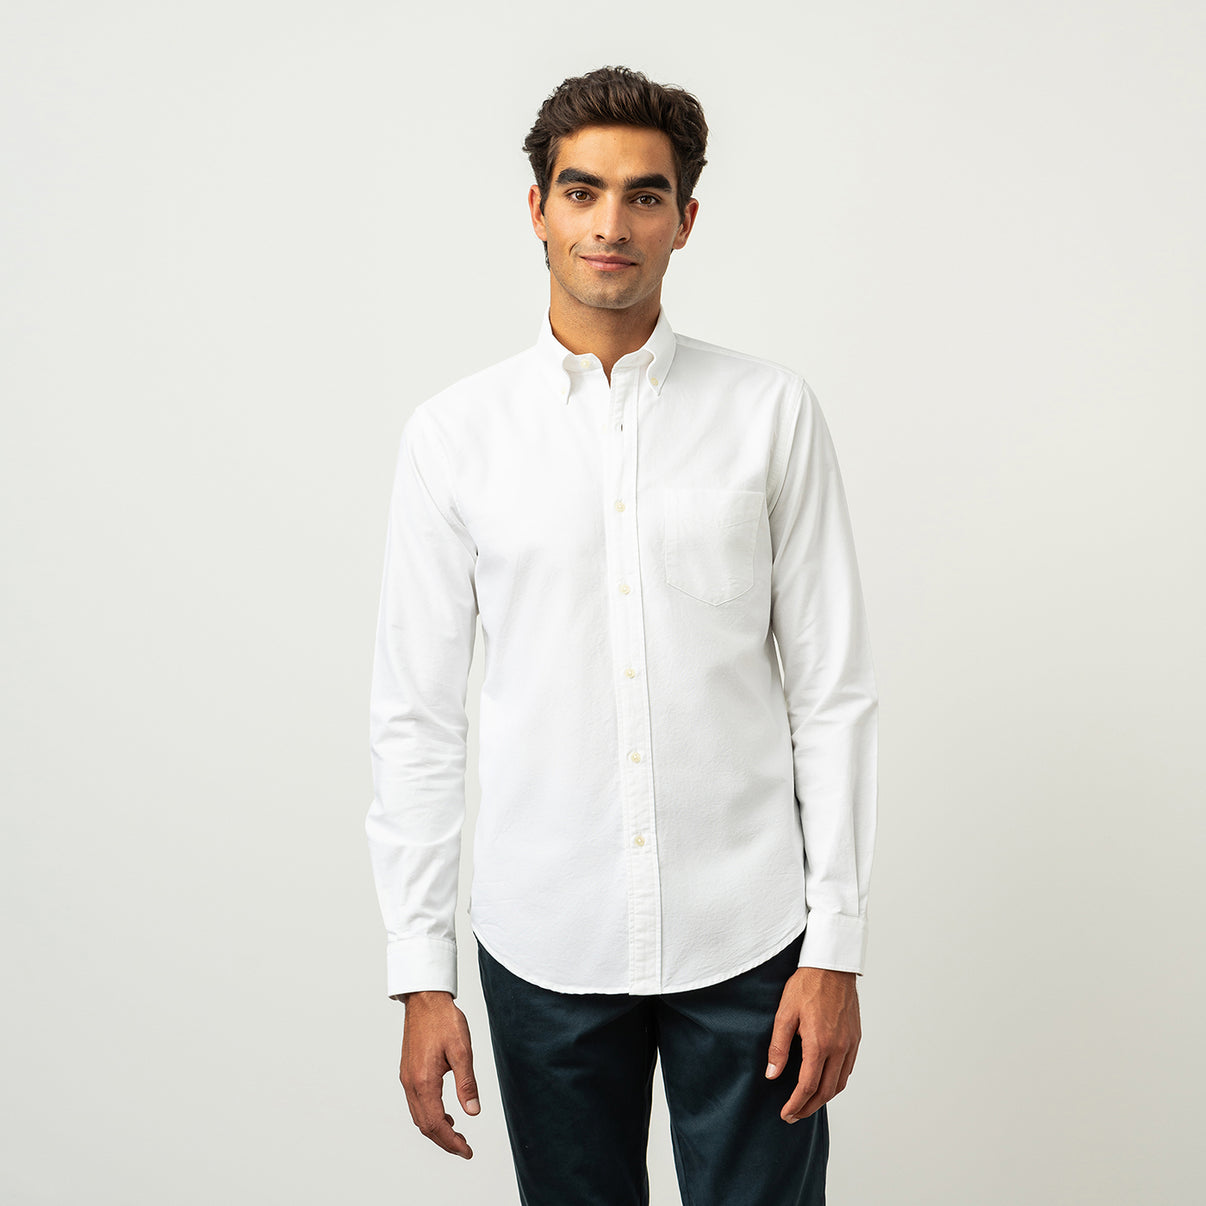 Men's Oxford Shirt White - Organic Cotton | ISTO.